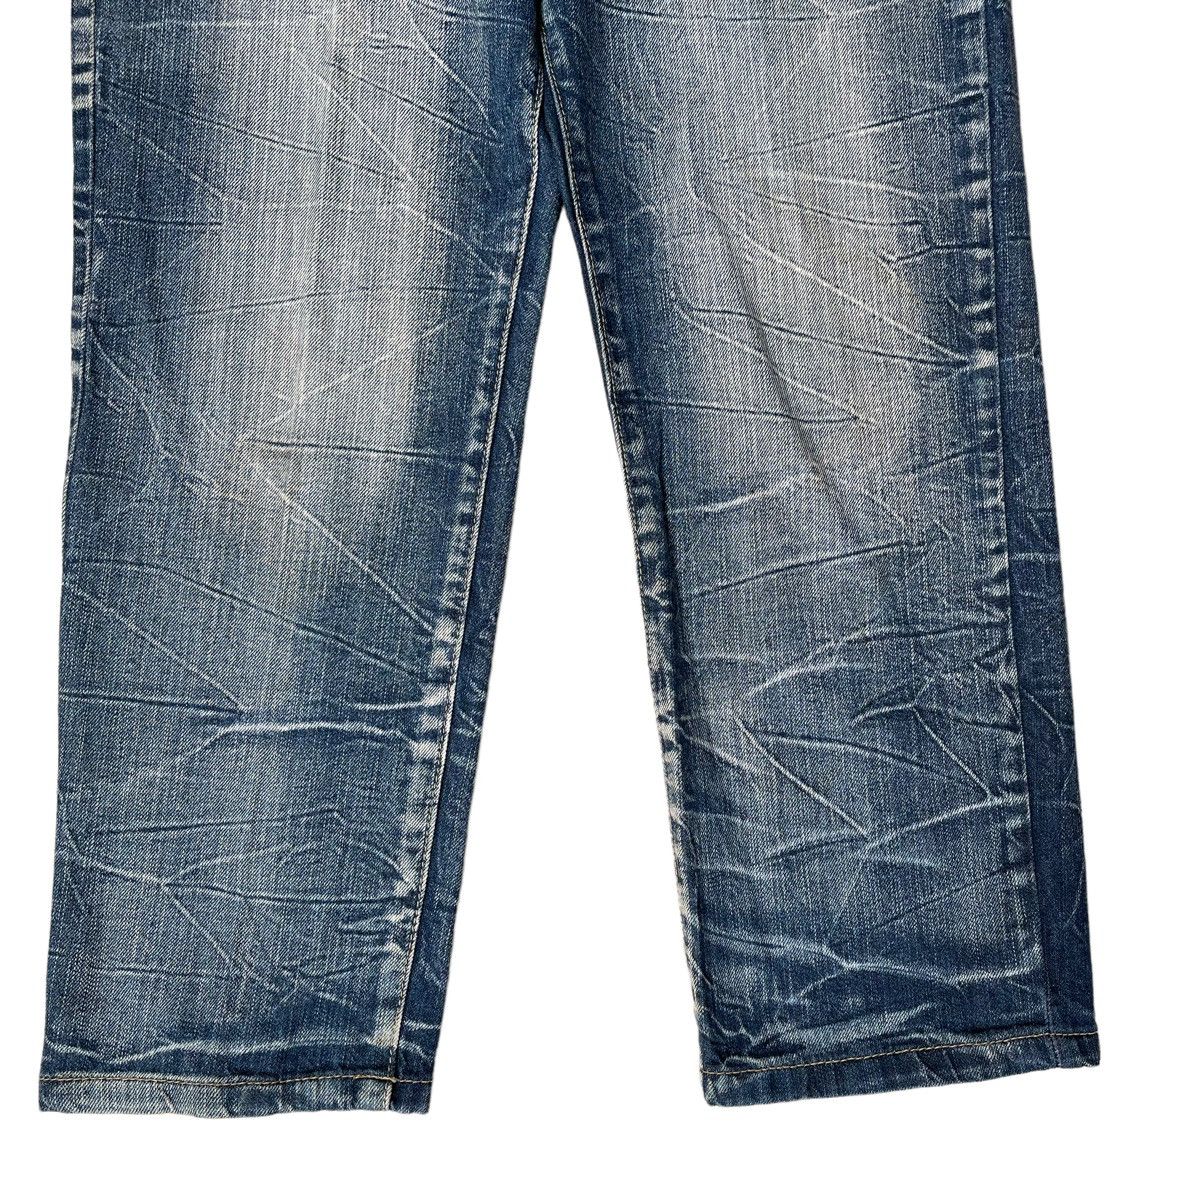 Japanase Unbrand Denim Flare Jeans 30 - 5